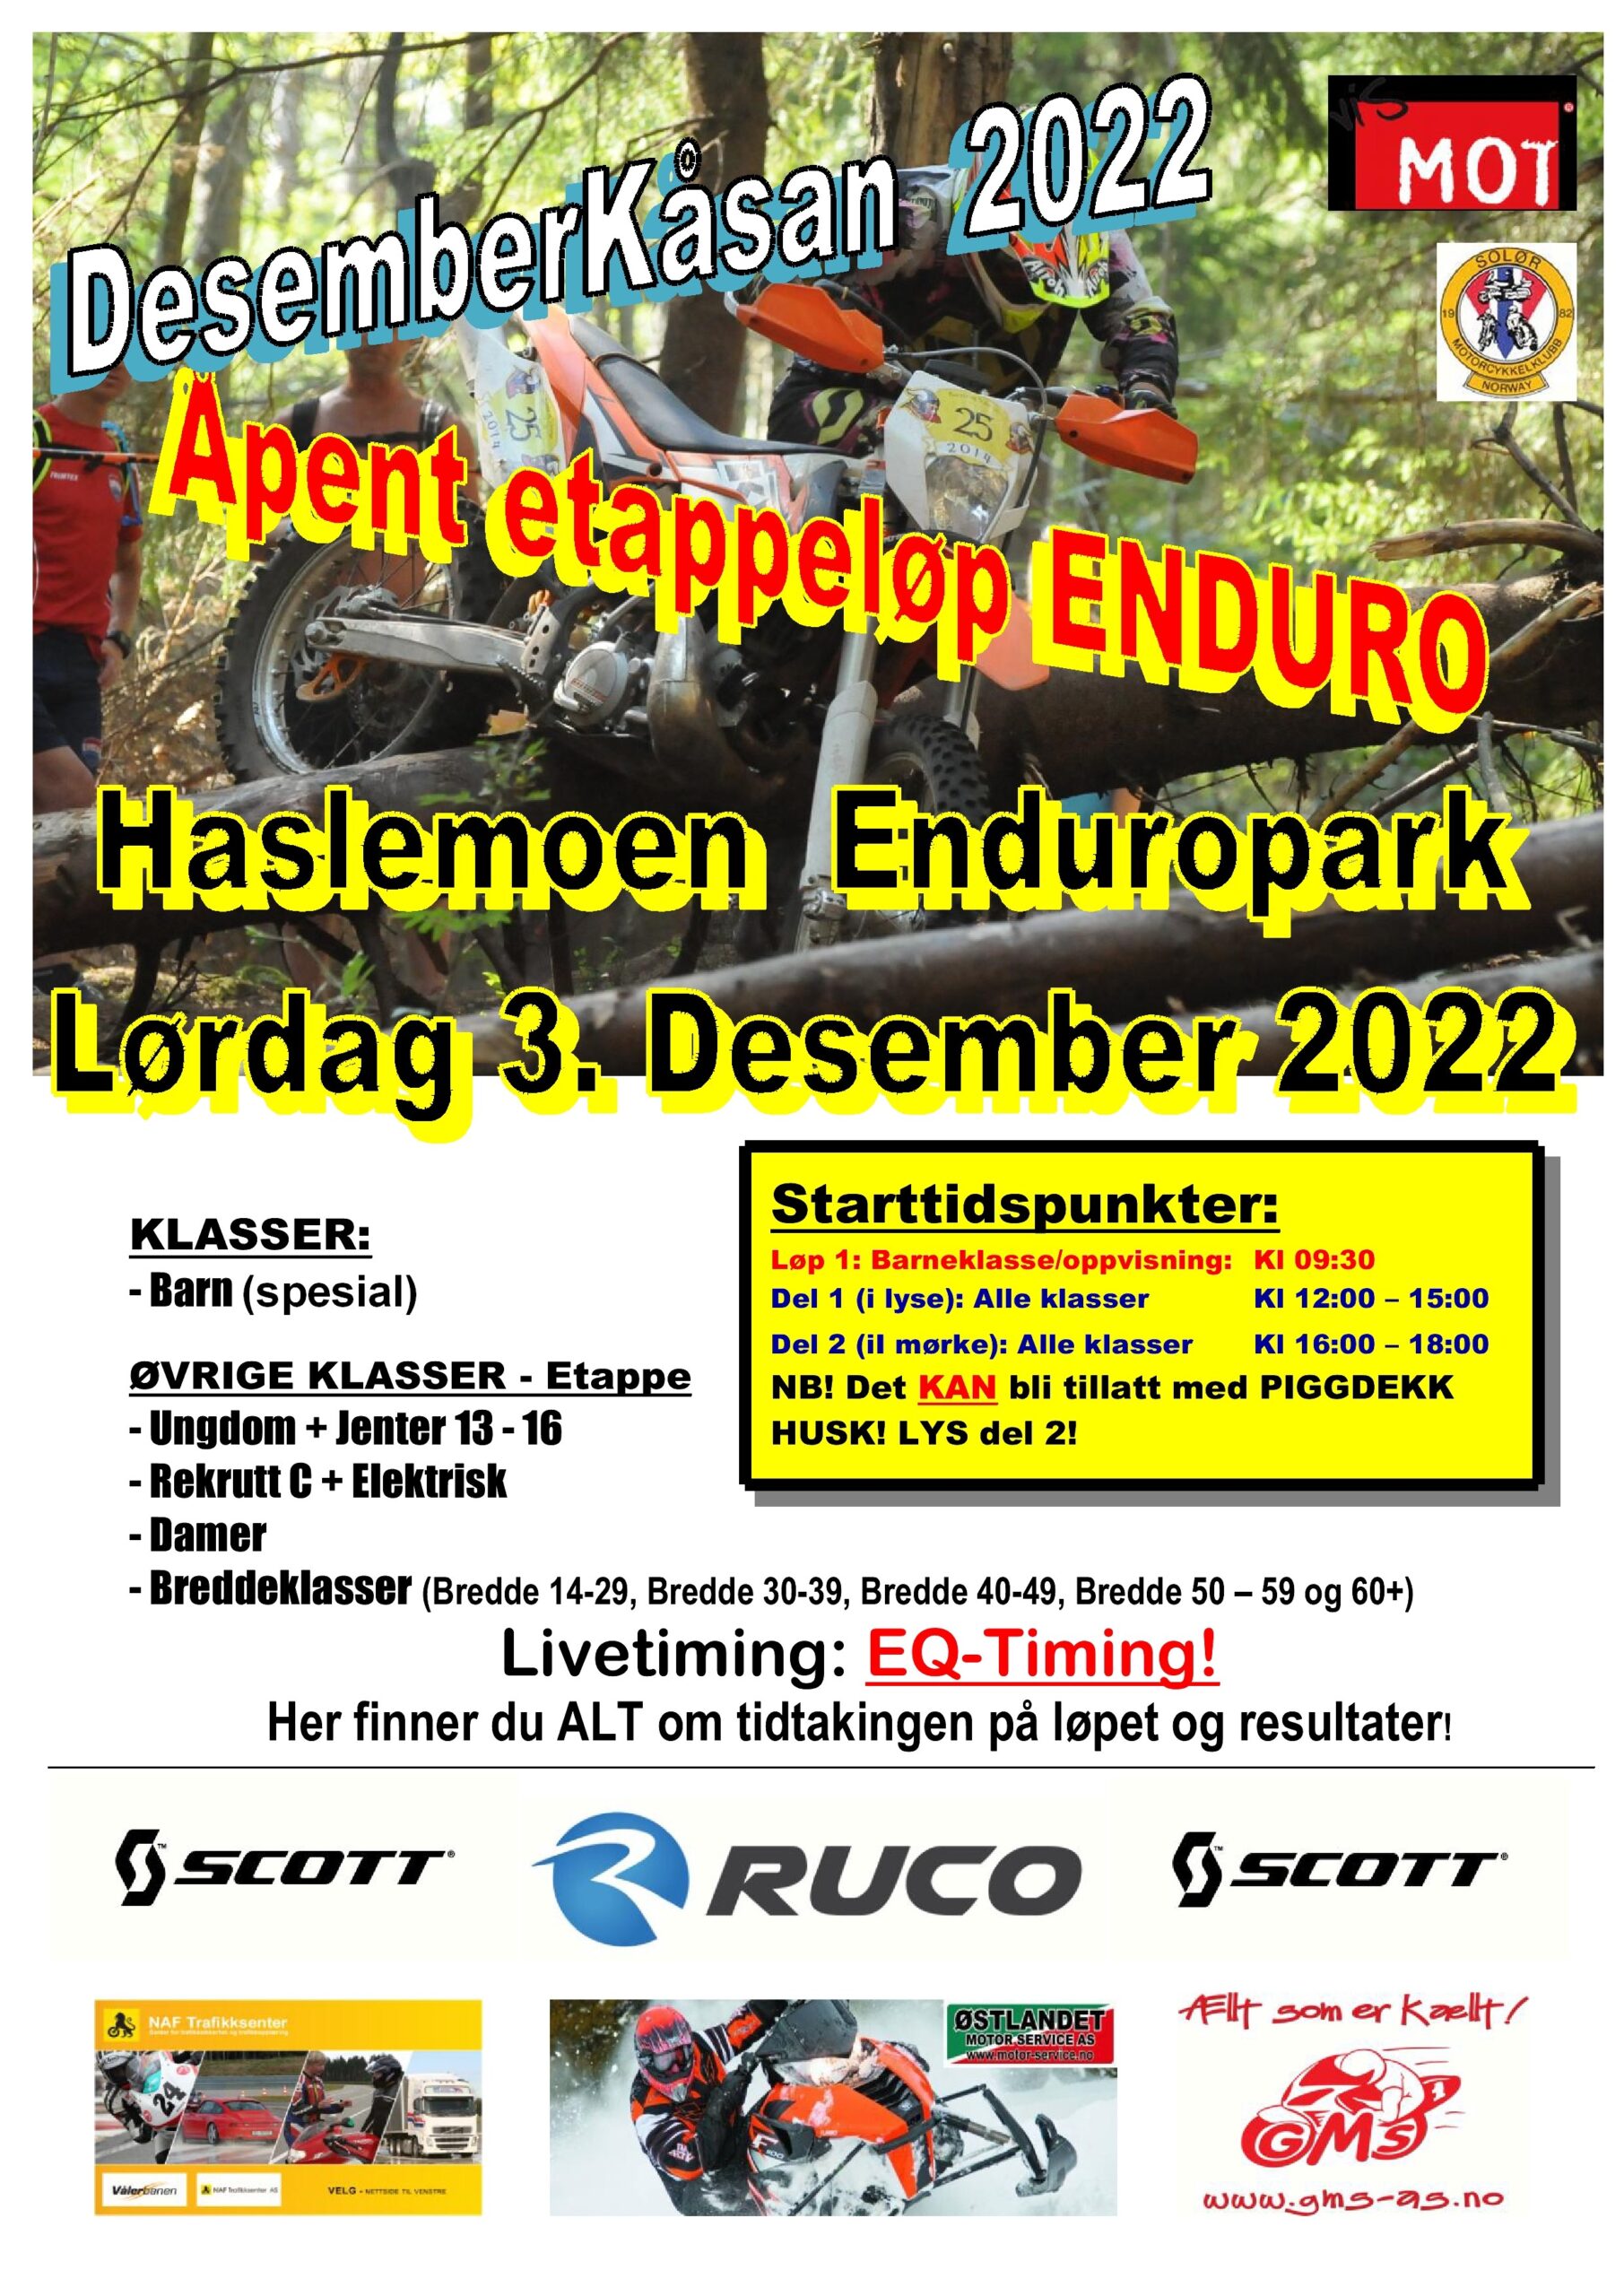 Poster Breddeløp enduro - DesemberKåsan 2022